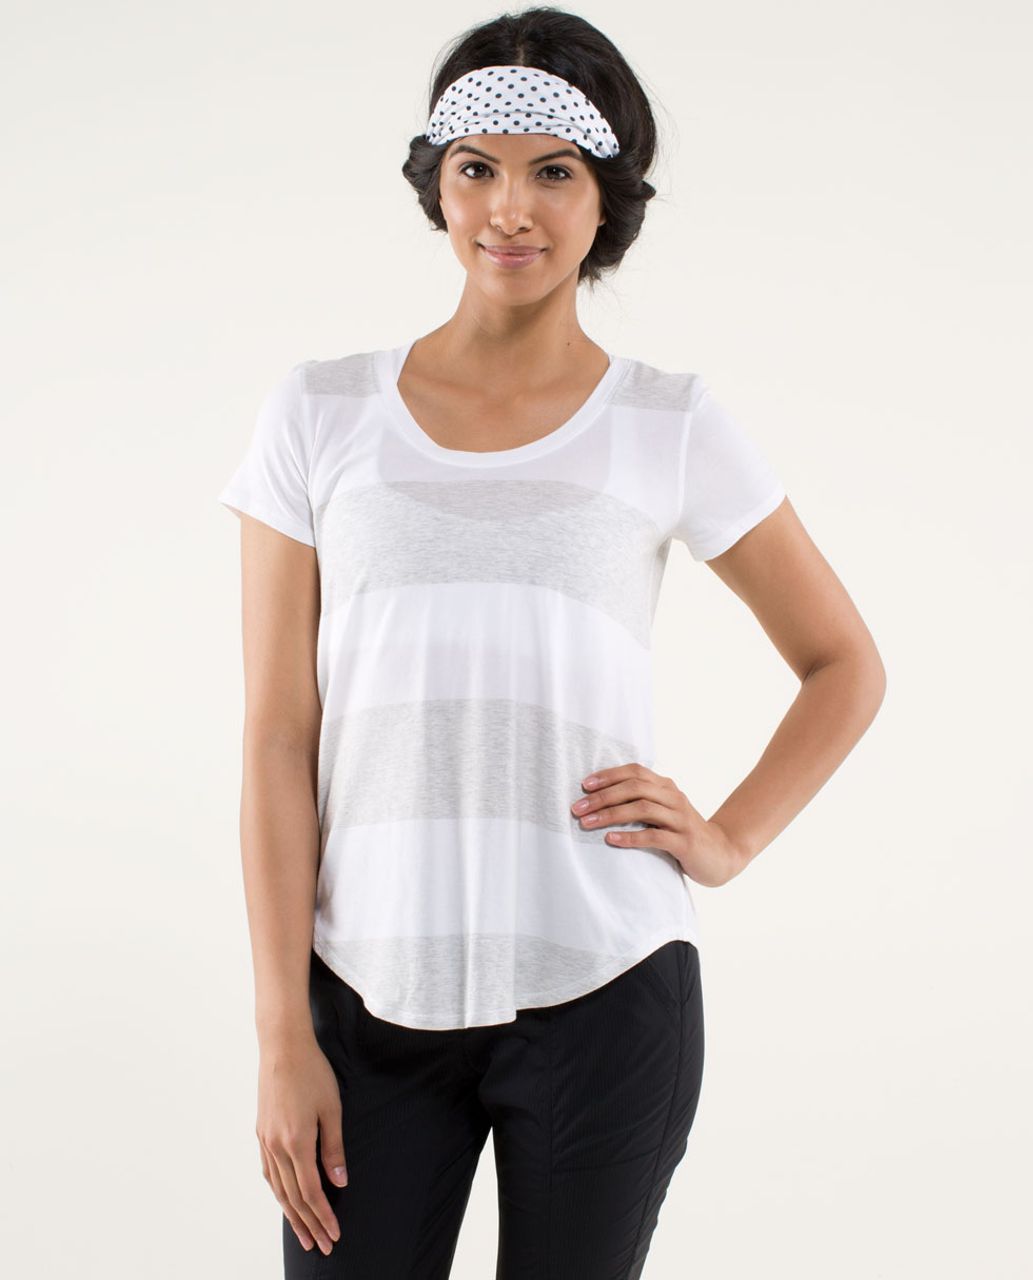 Lululemon Serene Short Sleeve - Bold Stripe Heather Nimbus / White